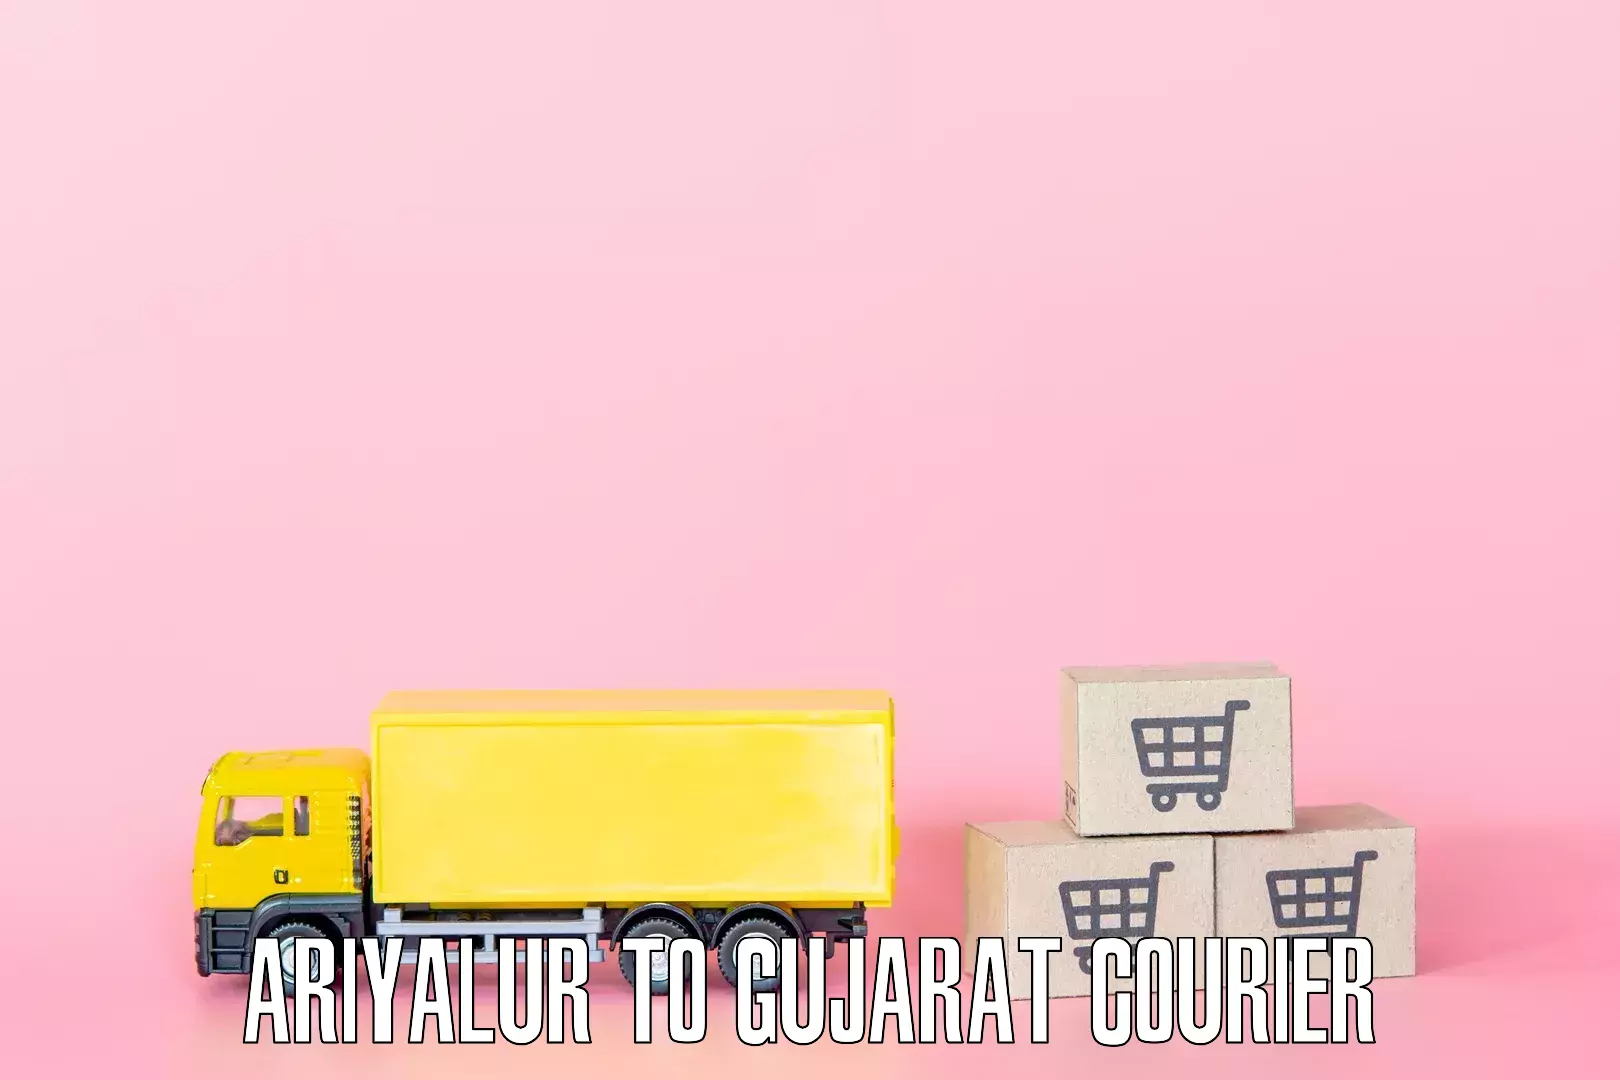 Furniture relocation experts Ariyalur to Gujarat